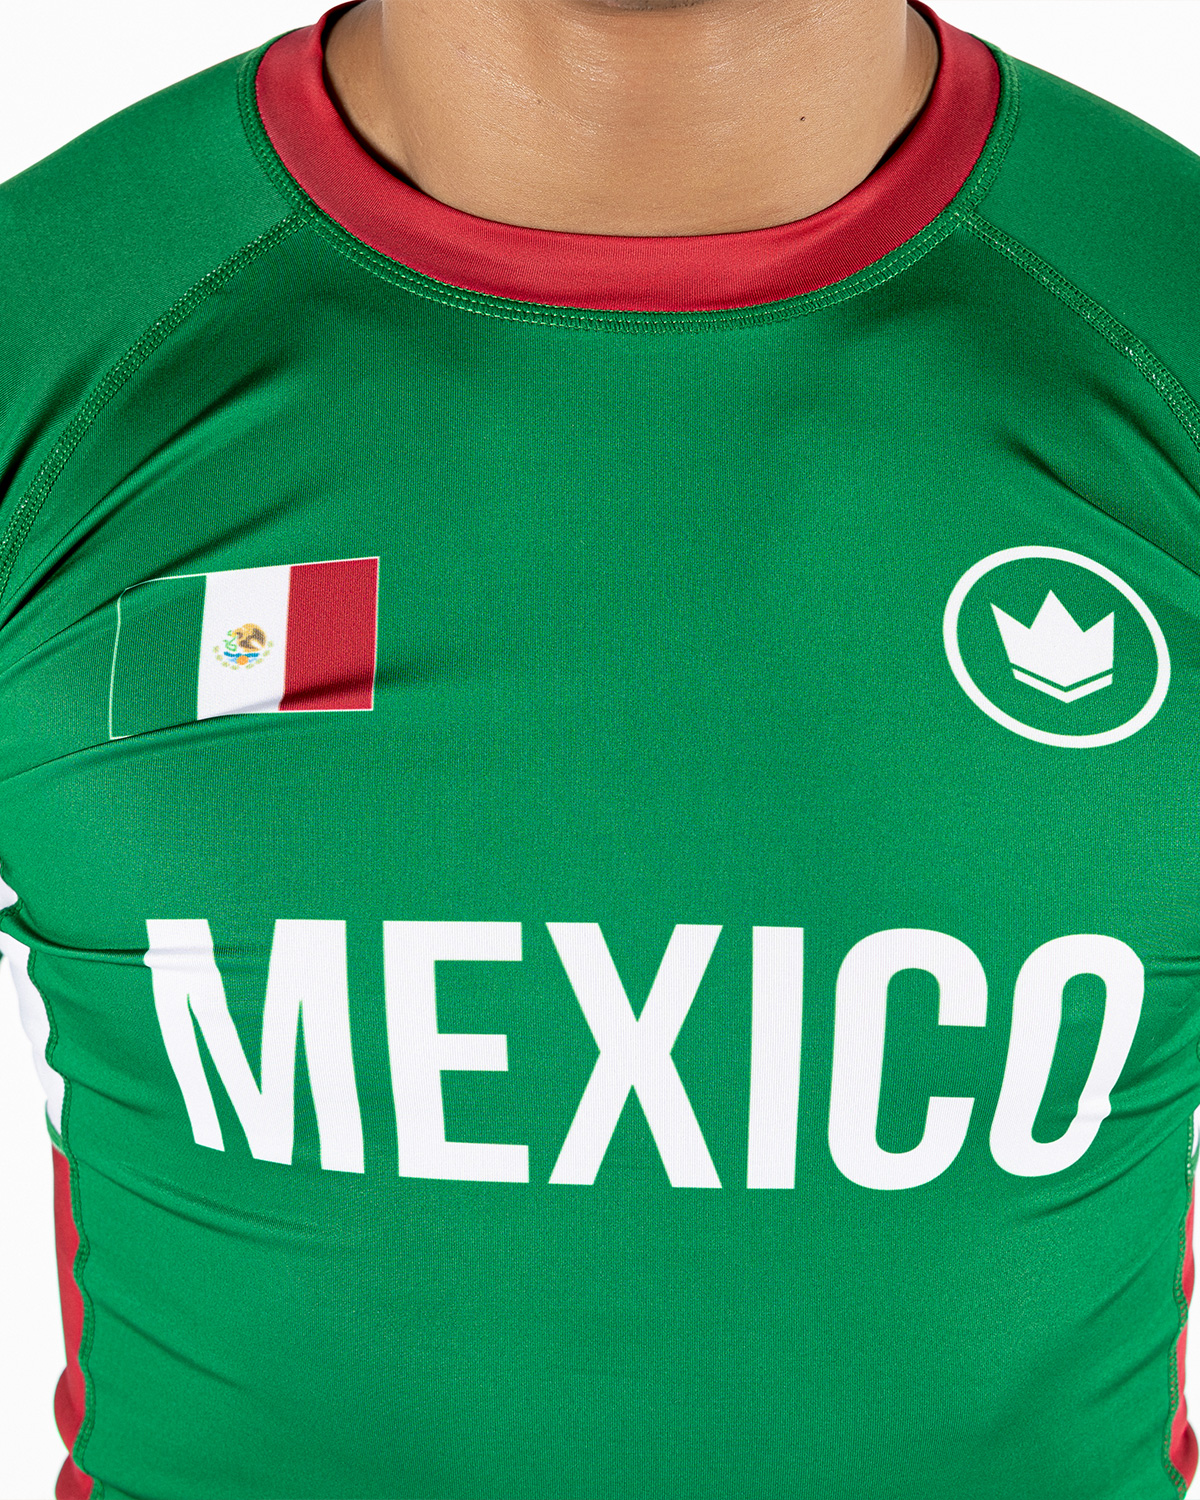 킹즈 국가대표 래쉬가드 숏슬리브 - 멕시코